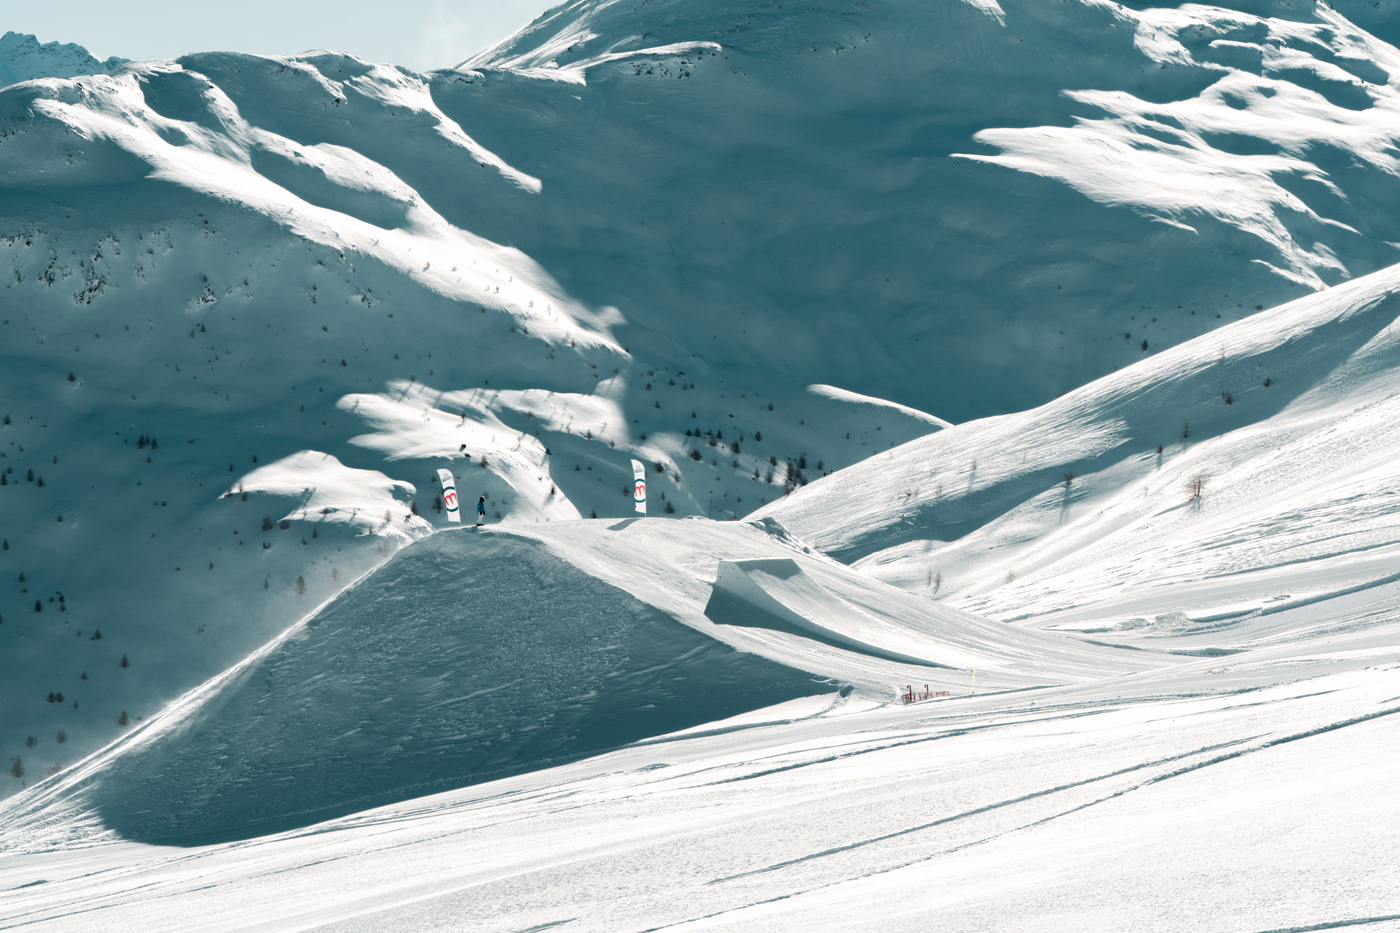 Mottolino Fun Mountain a Livigno: iniziano 5 mesi di neve e divertimento